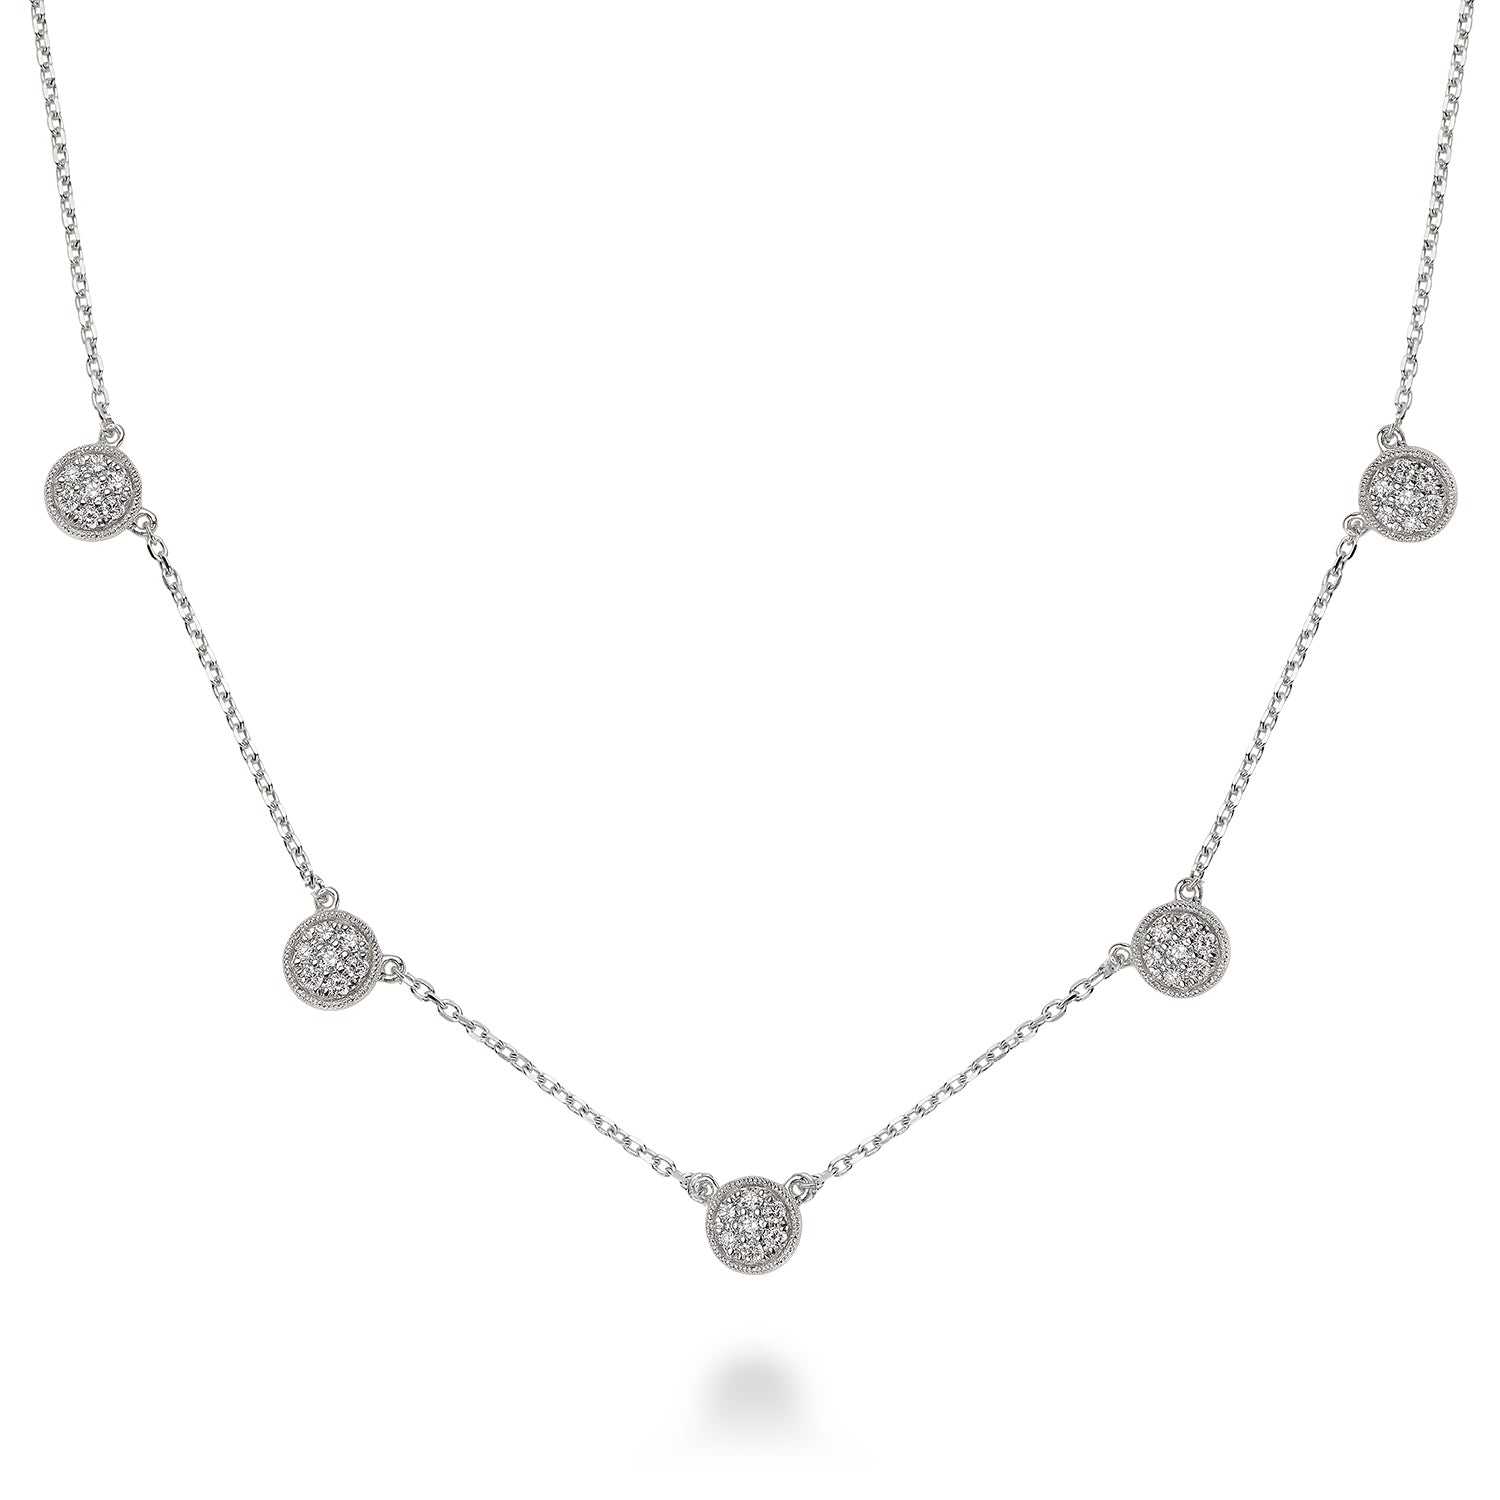 Hemsleys Collection 14K Round Disc Pavé 5 Station Diamond Necklace